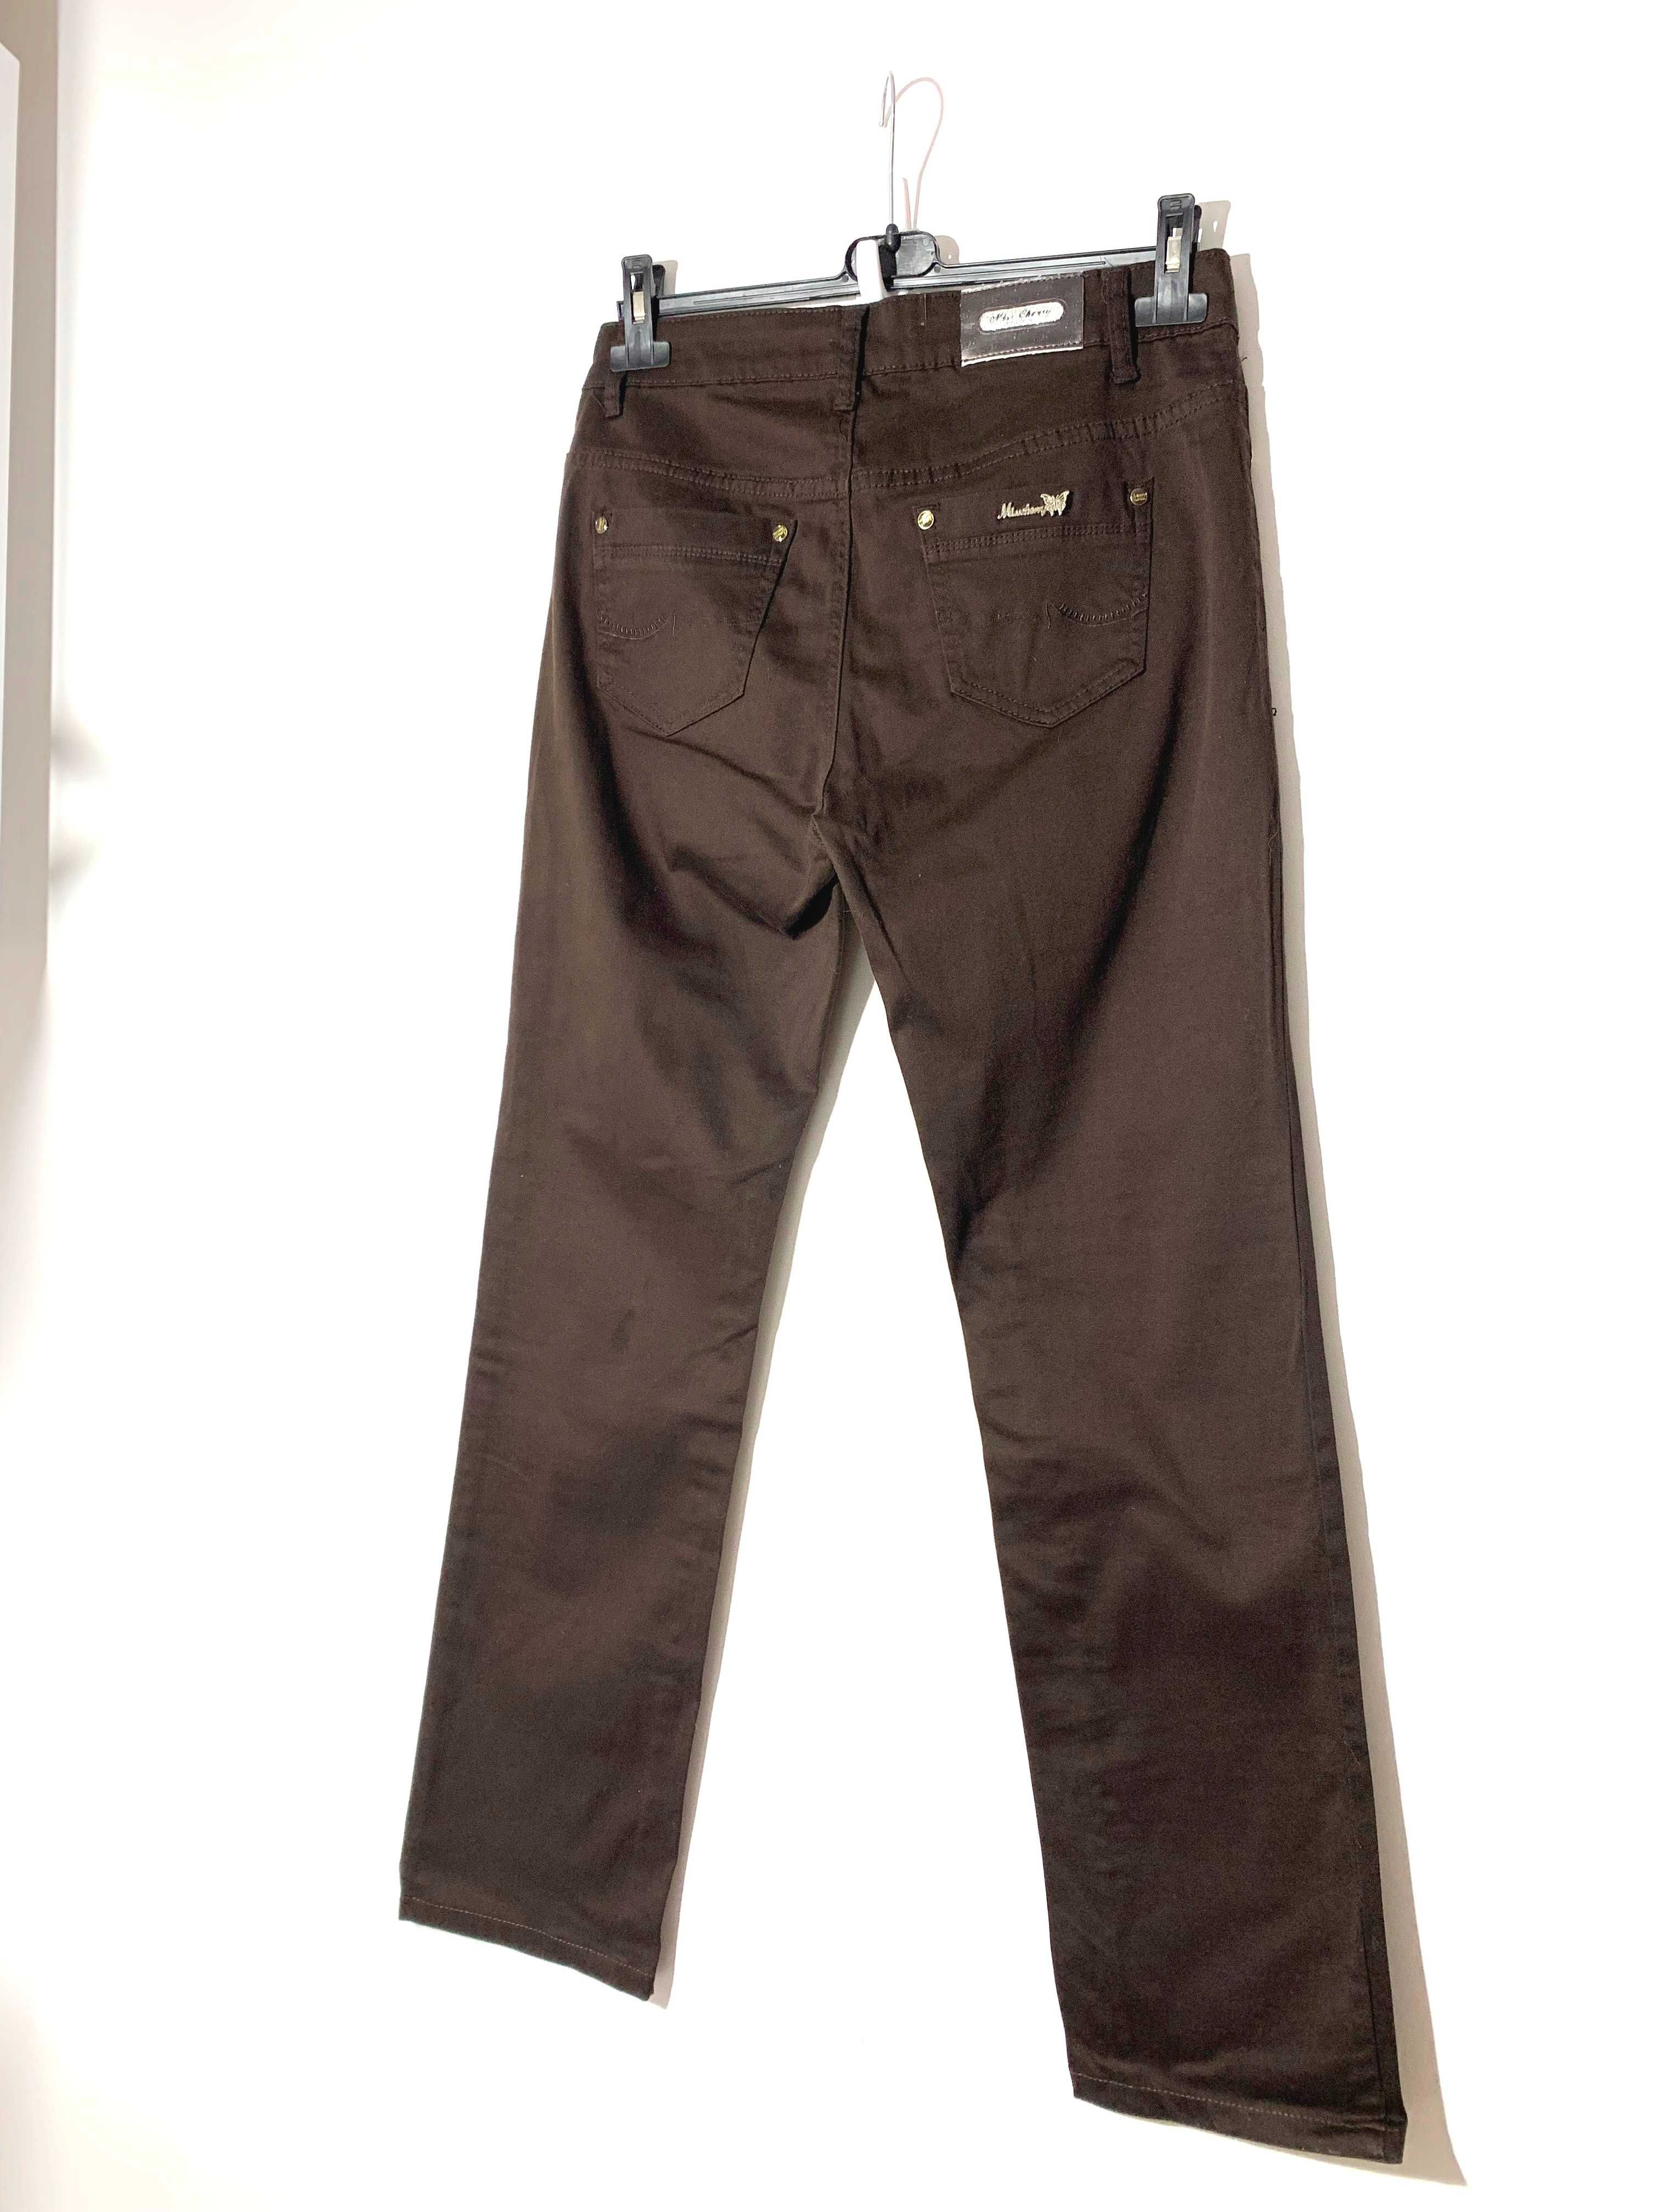 spodnie damskie typu proste brąz jeans klasyczne straight elastyczne